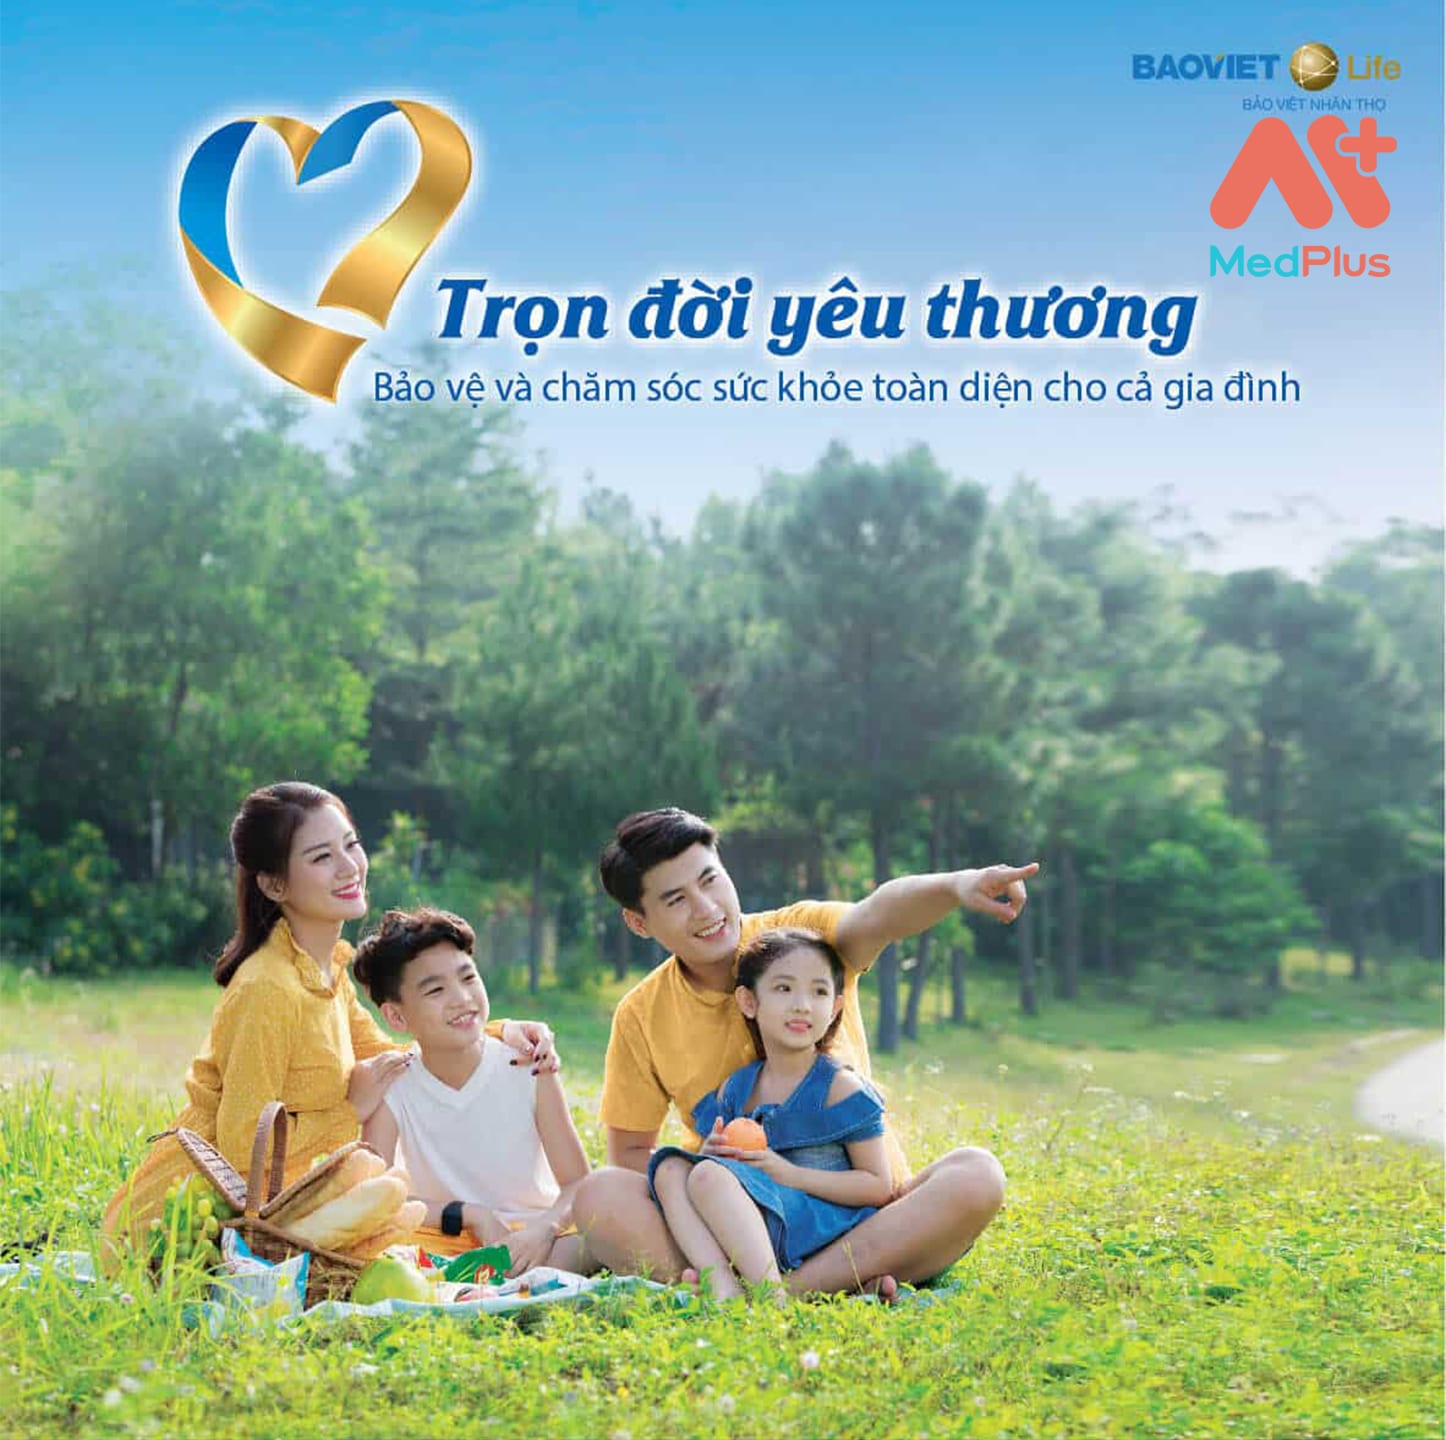 Gói bảo hiểm Bảo Việt bảo vệ trọn đời yêu thương